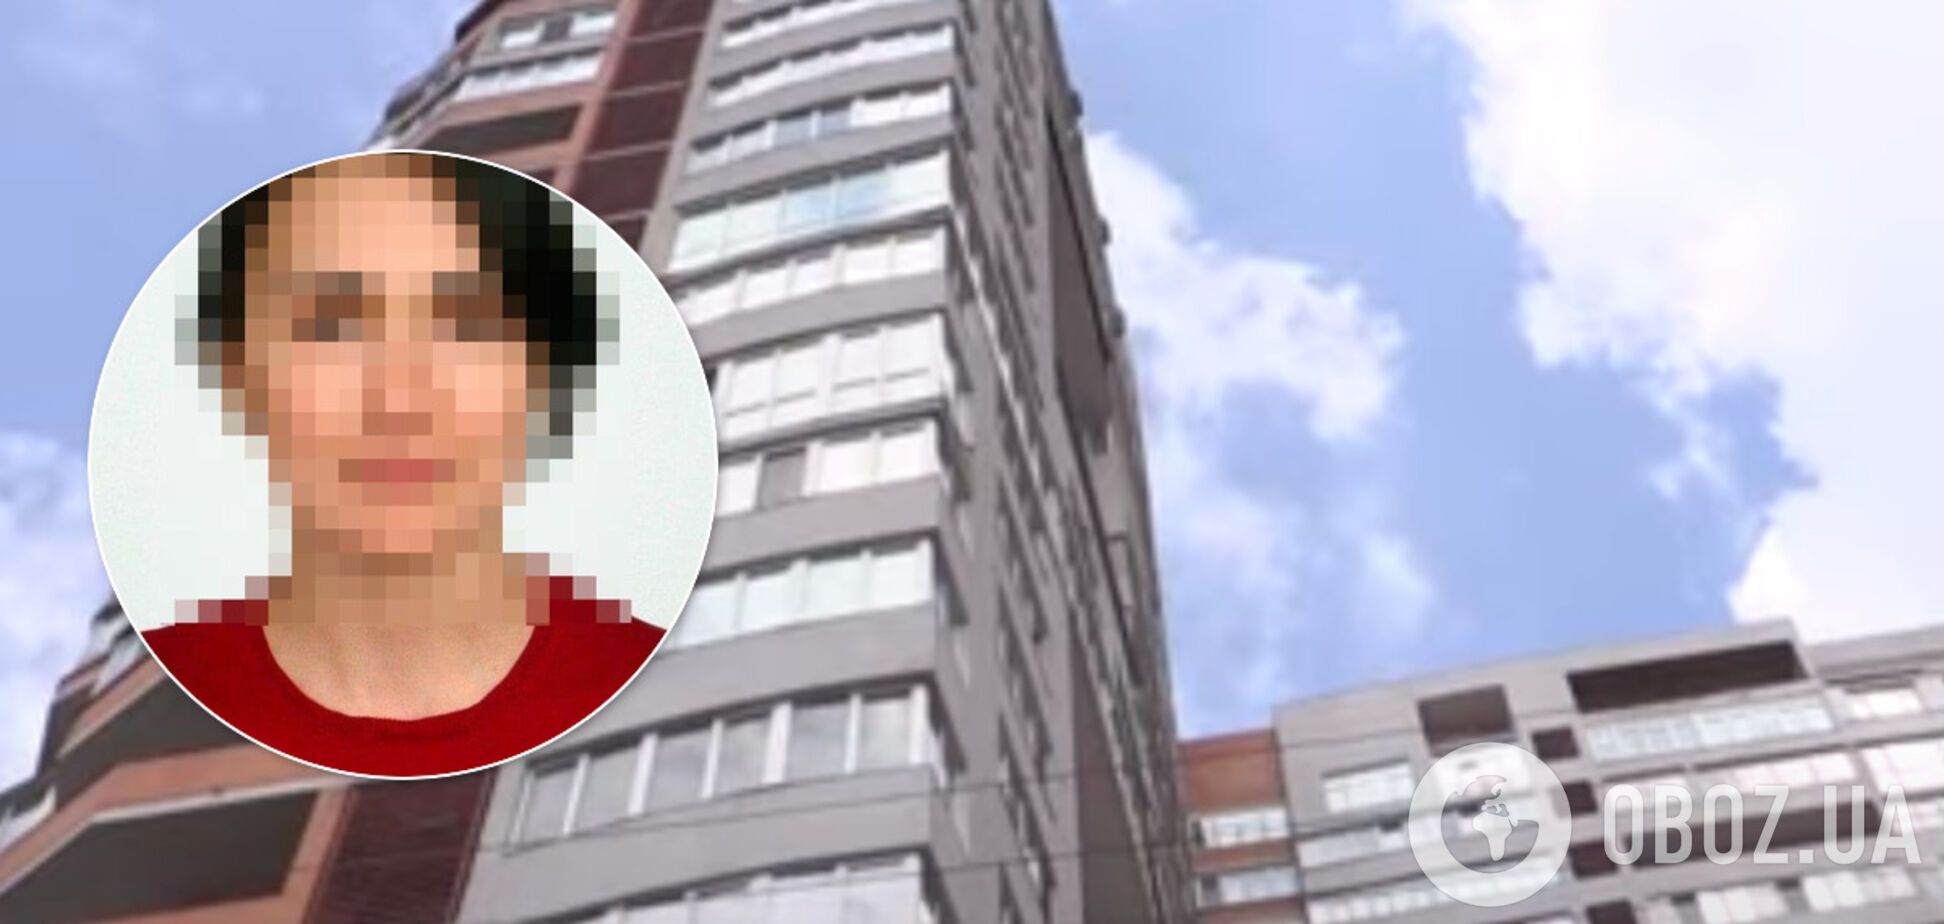 Випала з вікна з дитиною, поки чоловік спав: ексклюзивні деталі загибелі юристки в Харкові